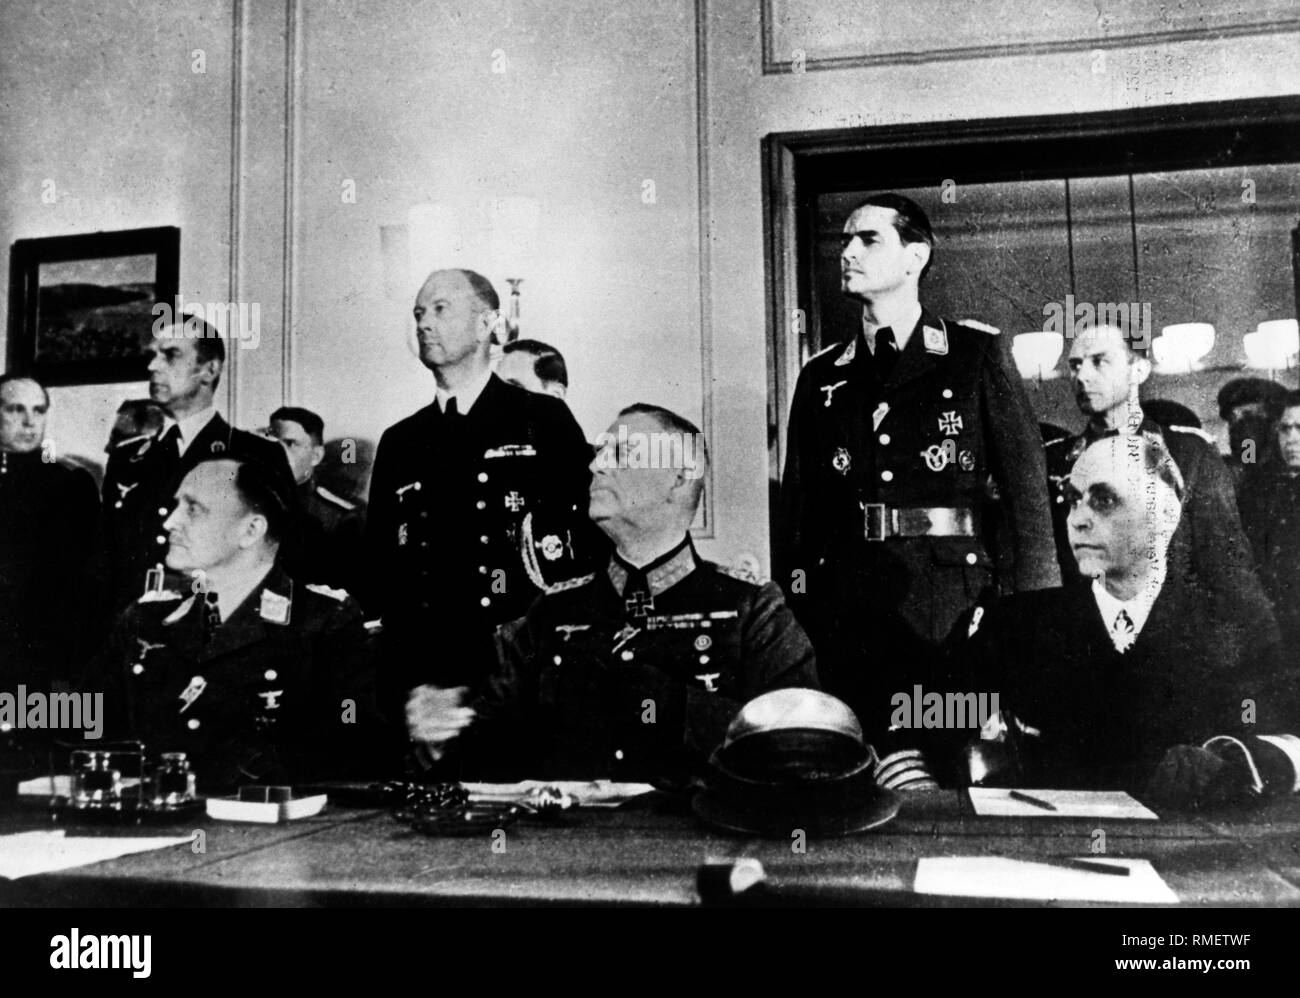 Hans-Juergen generale Stumpff, Maresciallo di Campo generale Wilhelm Keitel e Admiral Hans-Georg von Friedeburg ascoltare il discorso del maresciallo sovietico Schukow durante il procedimento formale capitolazione di Berlino Karlshorst sulla 09a di maggio 1945. Foto Stock